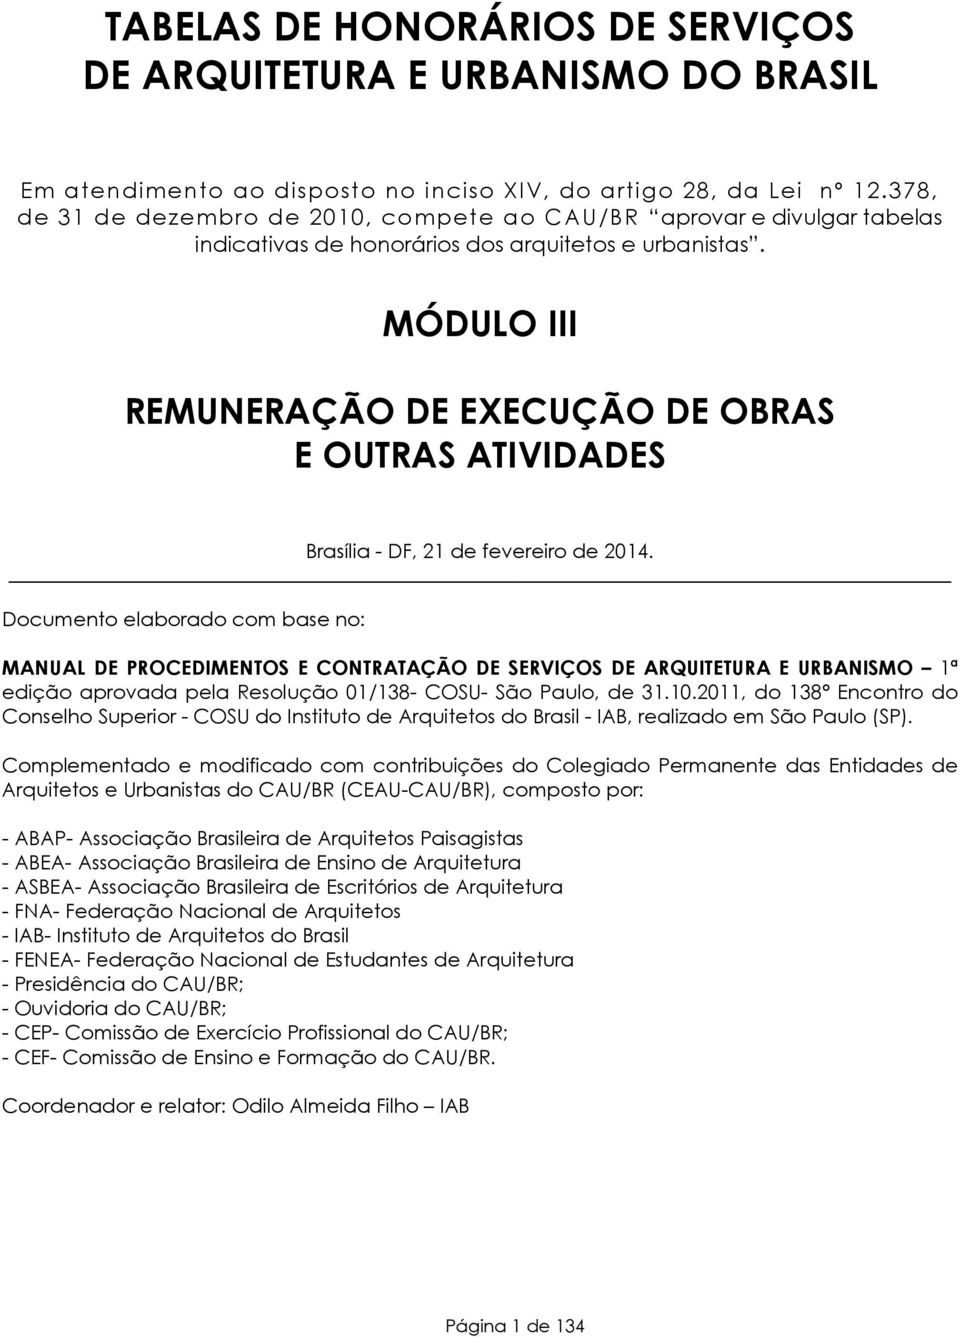 MÓDULO III REMUNERAÇÃO DE EXECUÇÃO DE OBRAS E OUTRAS ATIVIDADES Brasília - DF, 21 de fevereiro de 2014.